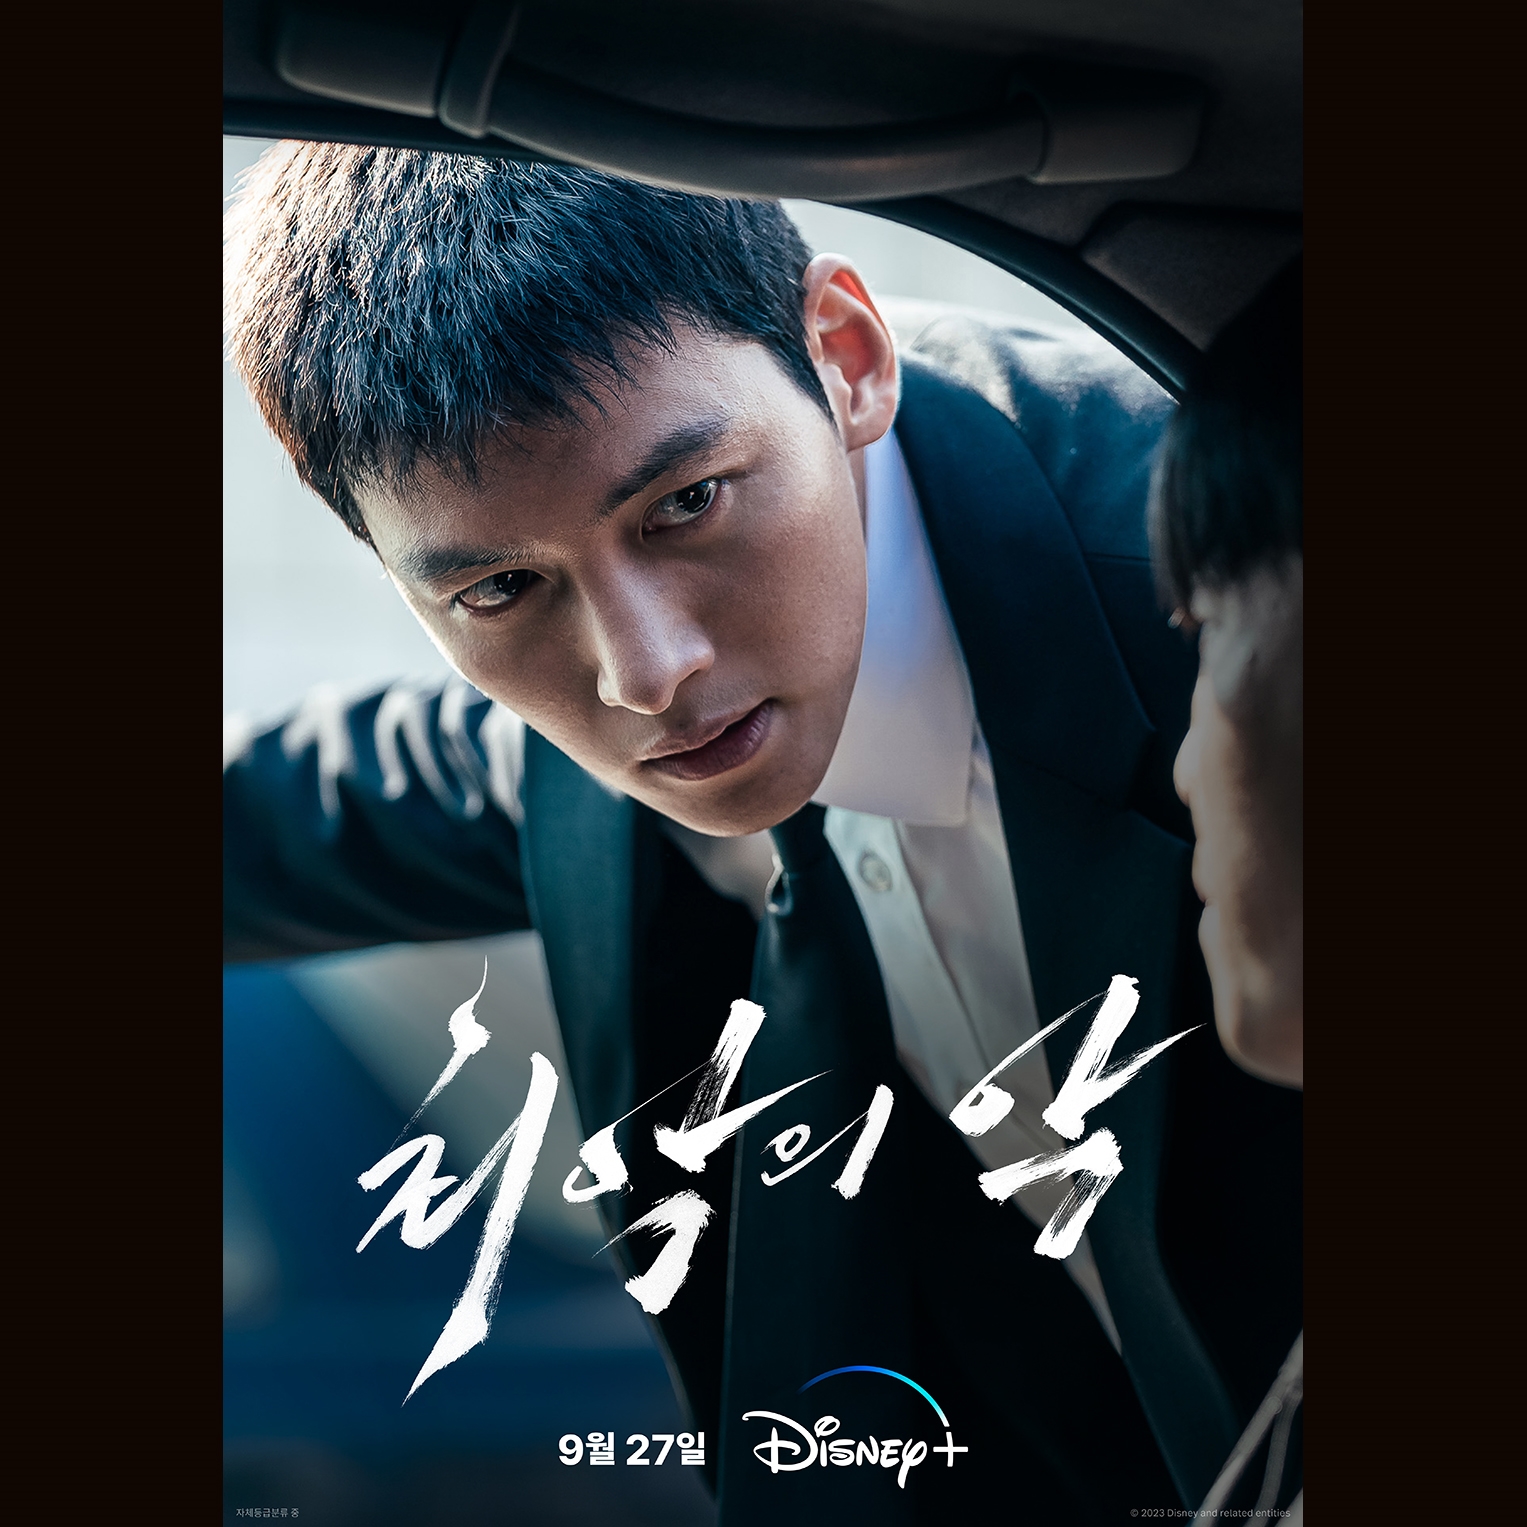 Ji Chang Wook 'nam thần phim hành động' sẽ ra mắt bộ phim mới vào tháng 9 năm nay - ảnh 3